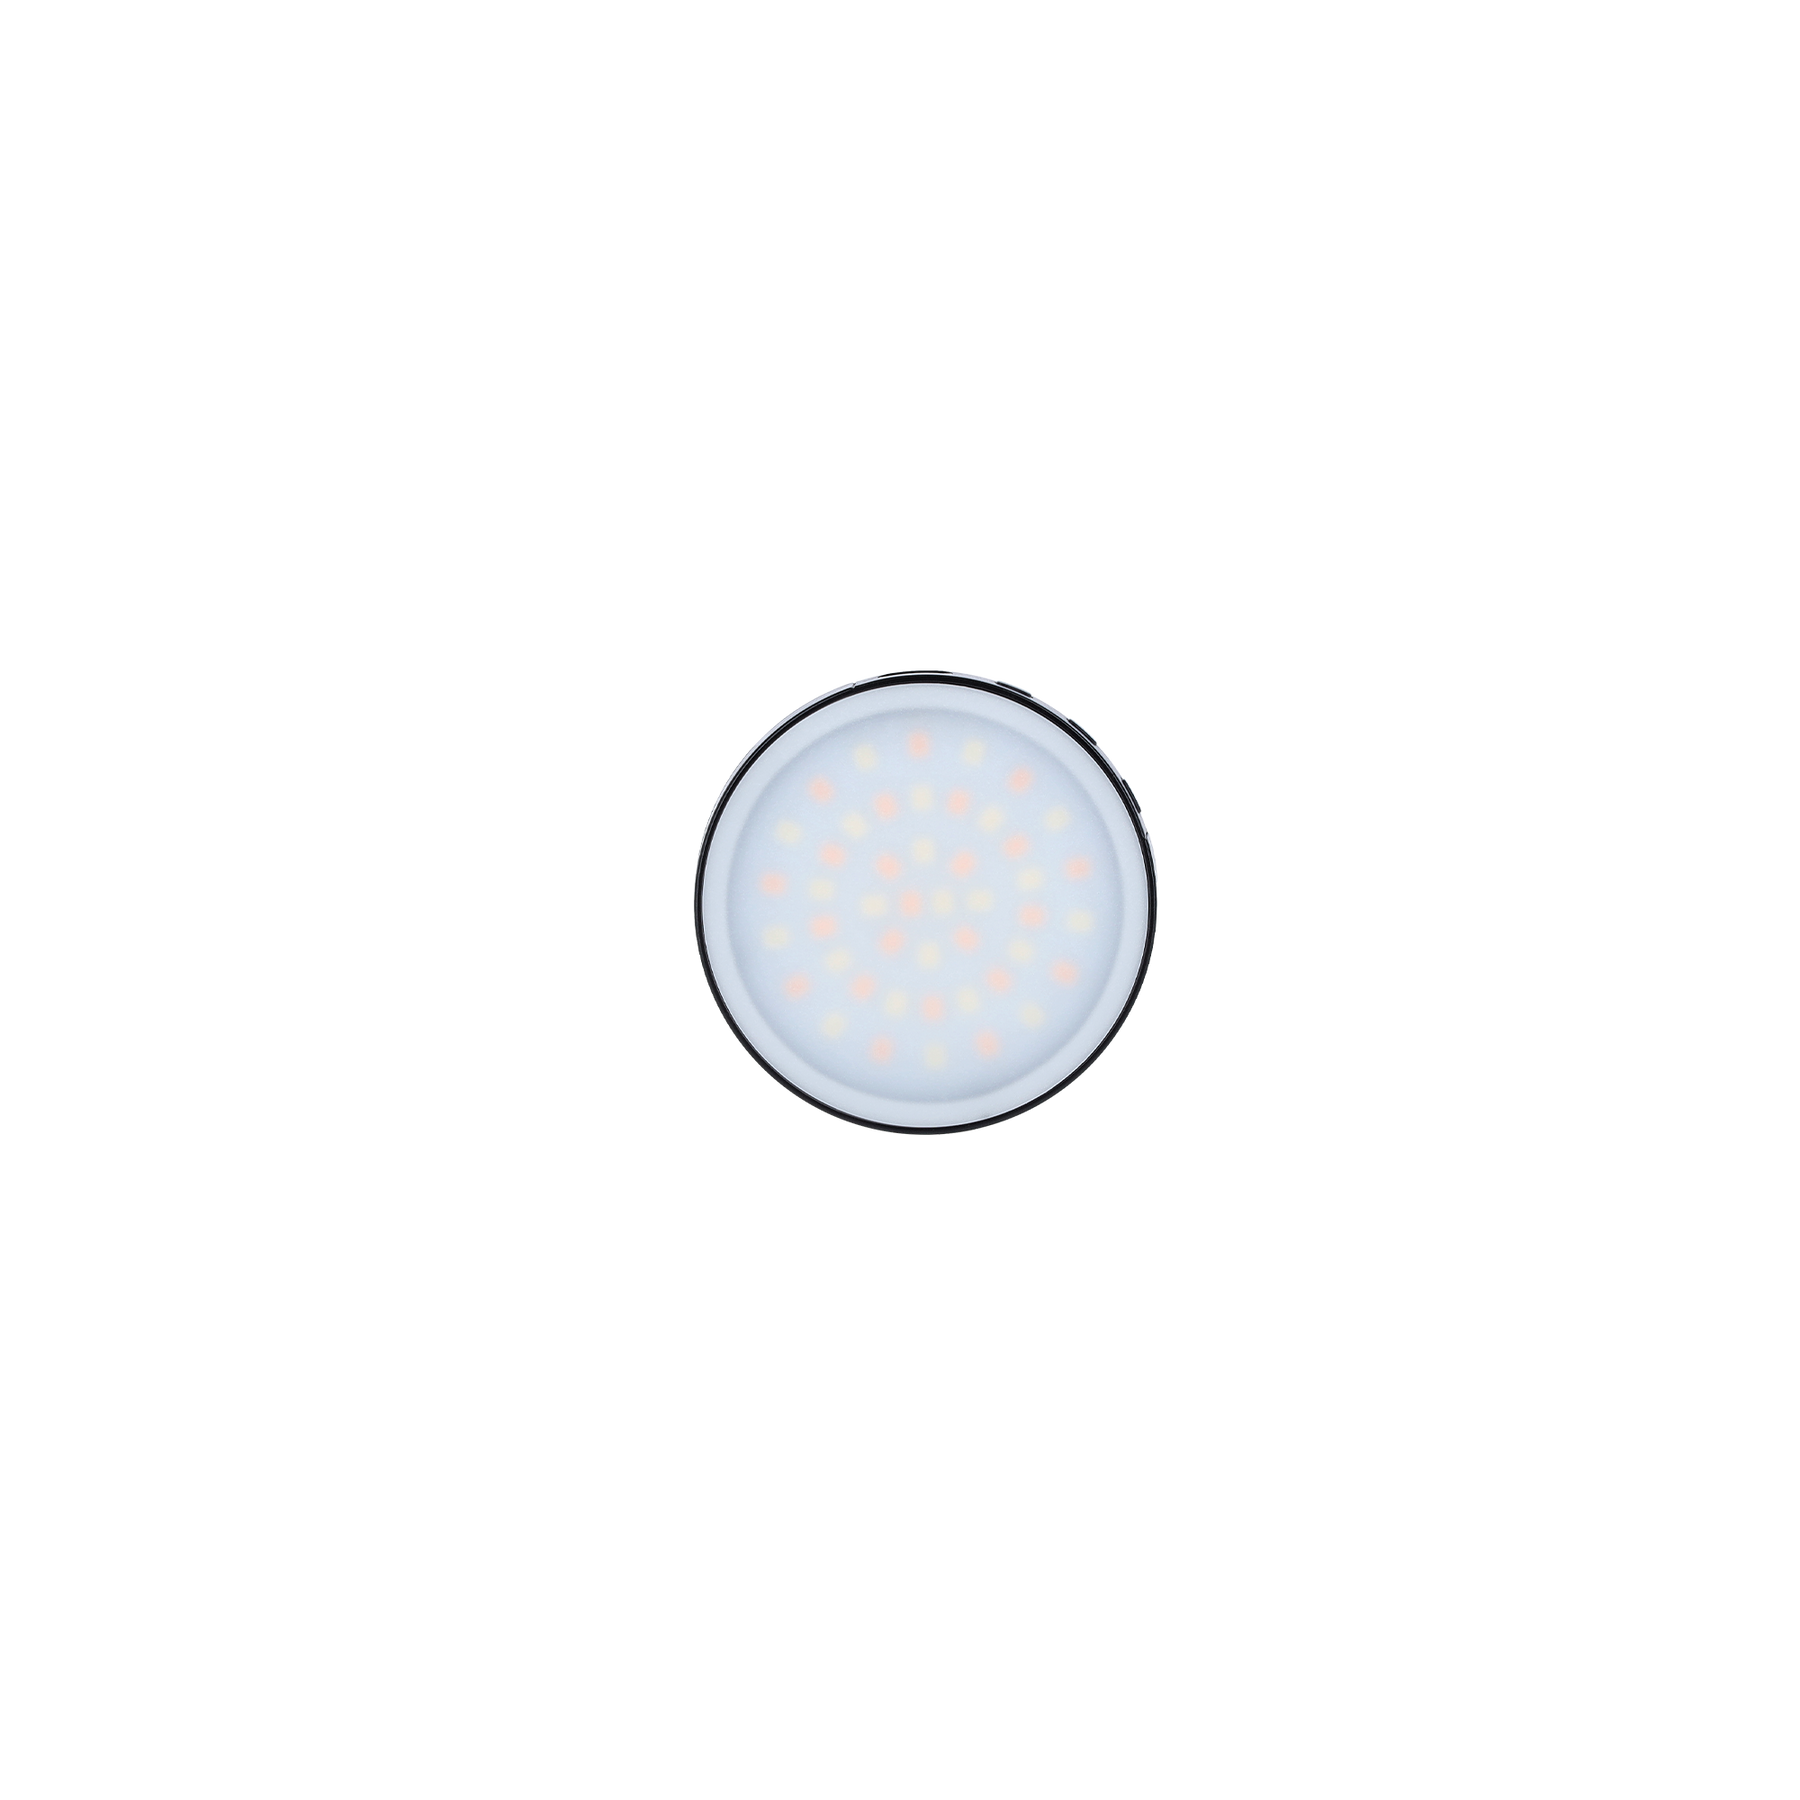 LUMIS Magnetic Smartphone Light Bi-Color - Round